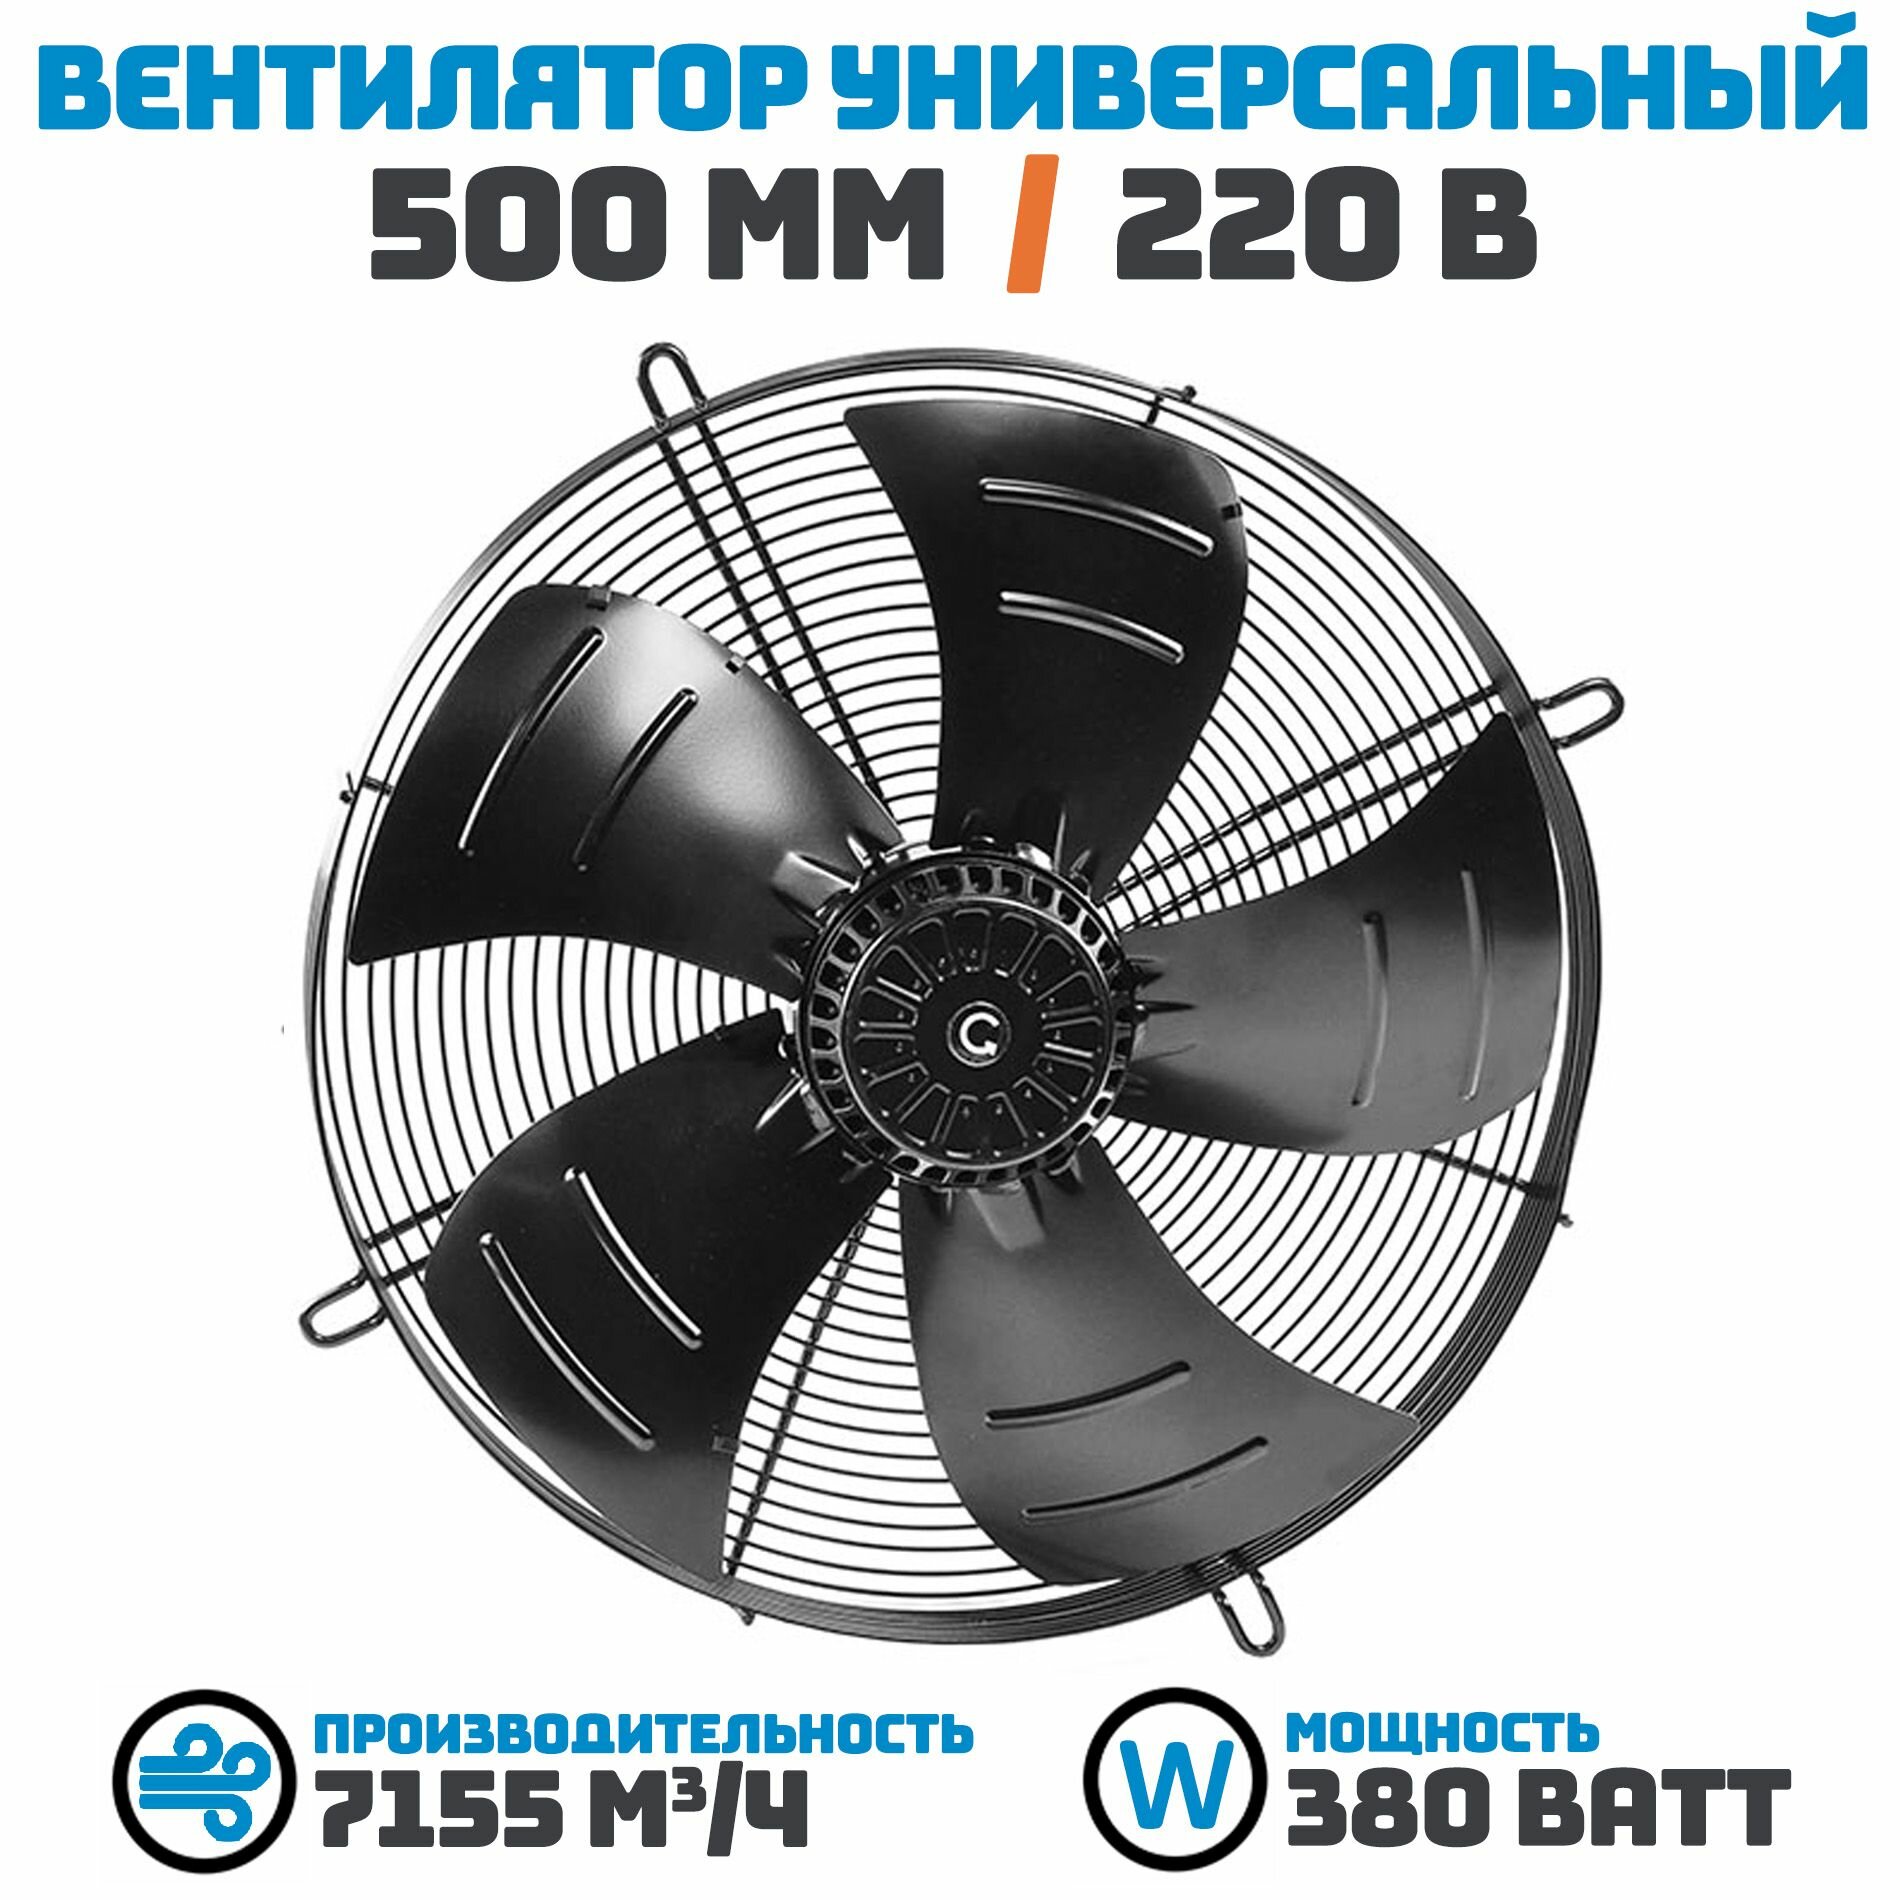 Вентилятор осевой 500 мм YWF4E-500S-137/35-G / 220 В 380 Ватт. Поток: всасывание (от радиатора) в комплекте с защитной решеткой.